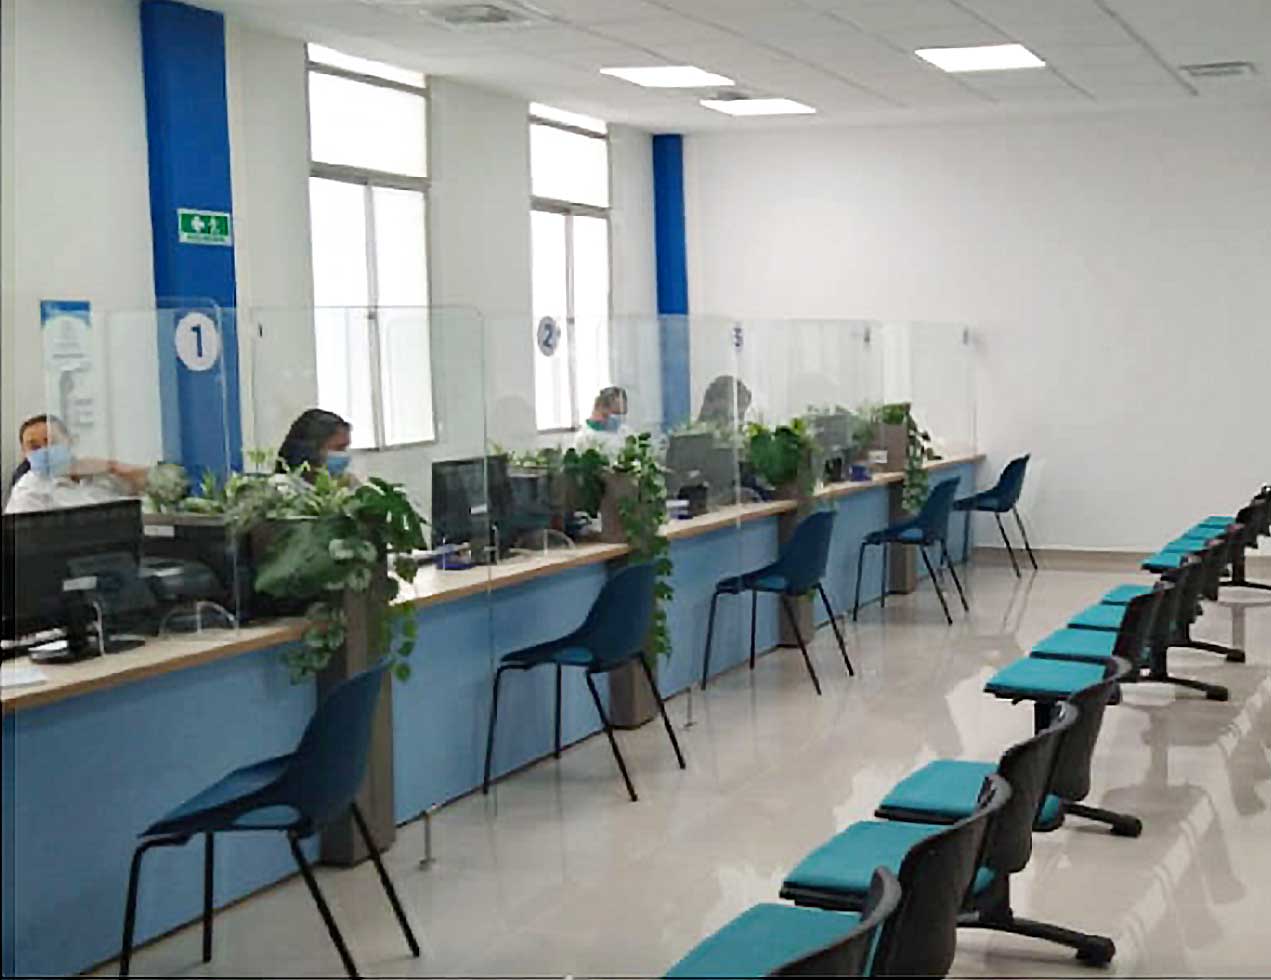 Air-e tiene dos oficinas comerciales para la atención de usuarios en Riohacha